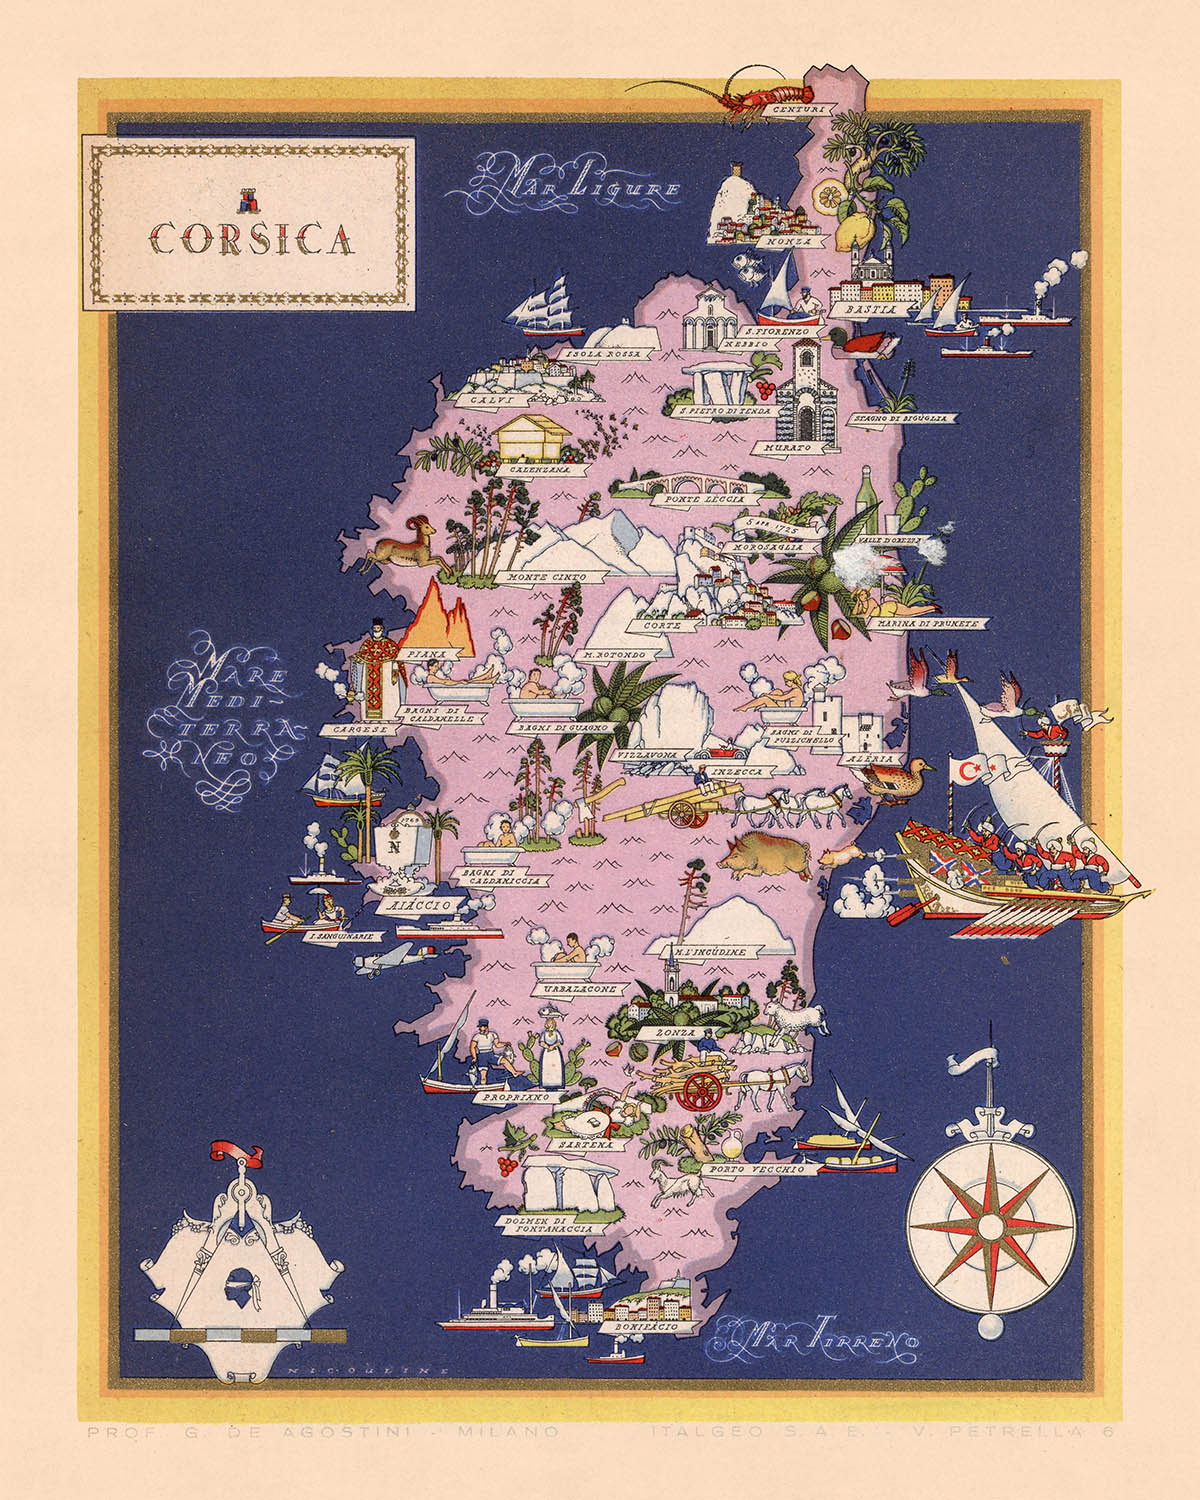 Ancienne carte de la région italienne de Corse, 1938 : Bastia, Ajaccio, Calvi, Corte, Porto-Vecchio